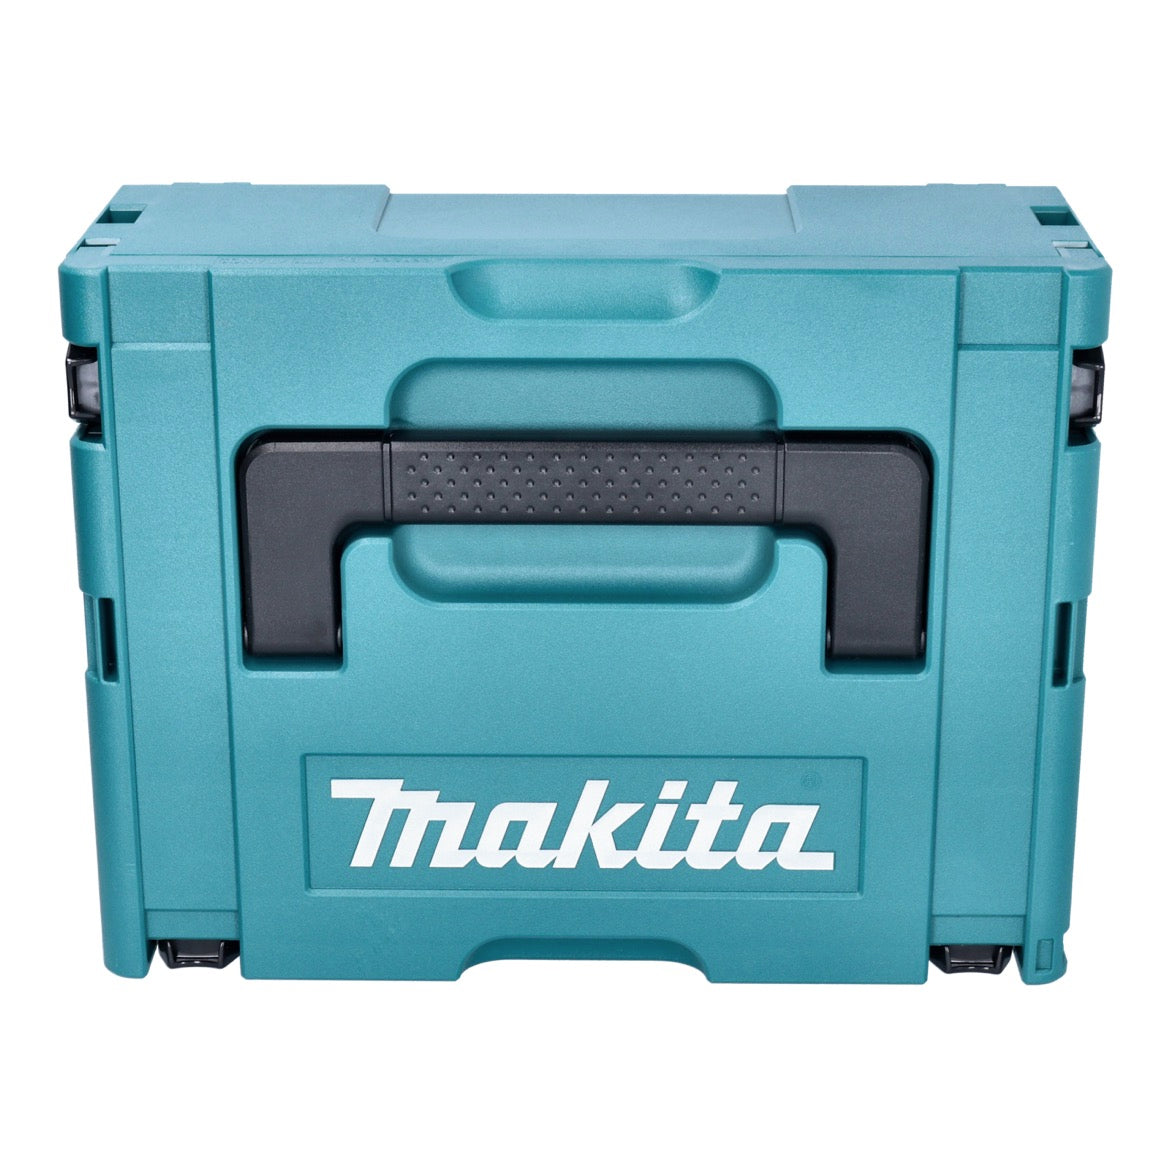 Makita DTM 52 M1JX4 Akku Multifunktionswerkzeug 18 V Starlock Max Brushless + 1x Akku 4,0 Ah + Zubehör Set + Makpac - ohne Ladegerät